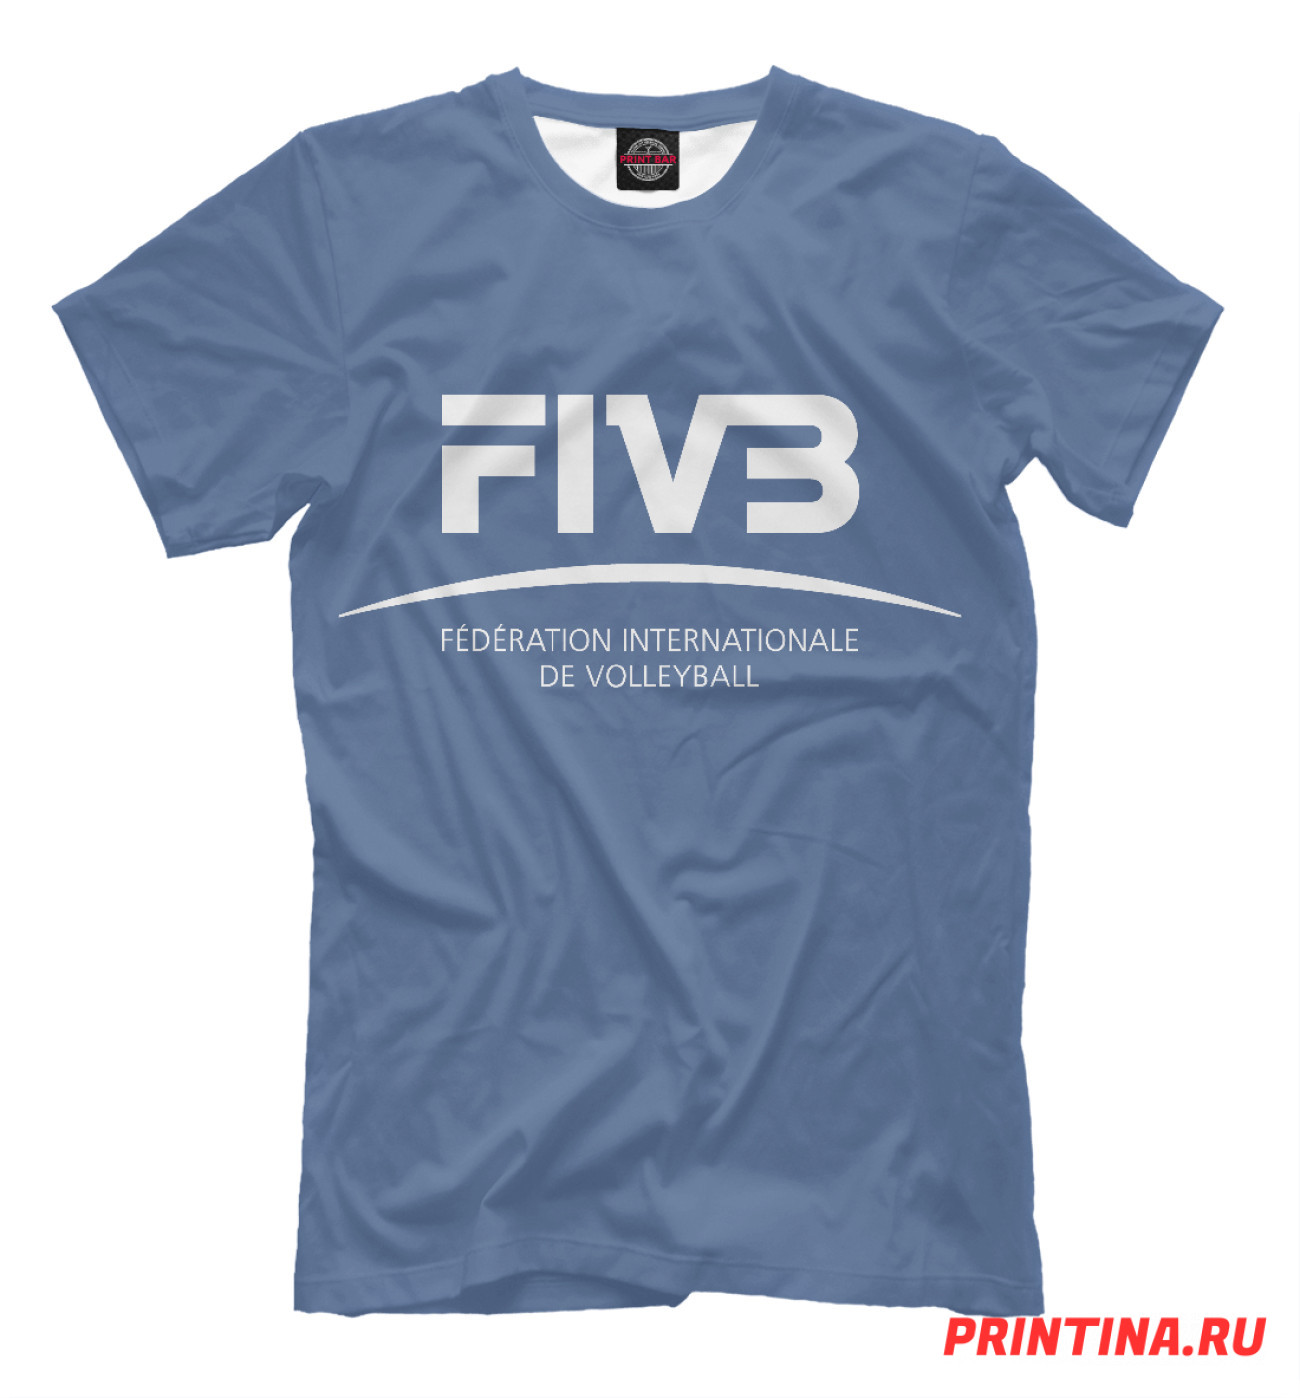 Мужская Футболка FIVB Волейбол, артикул: VLB-463009-fut-2